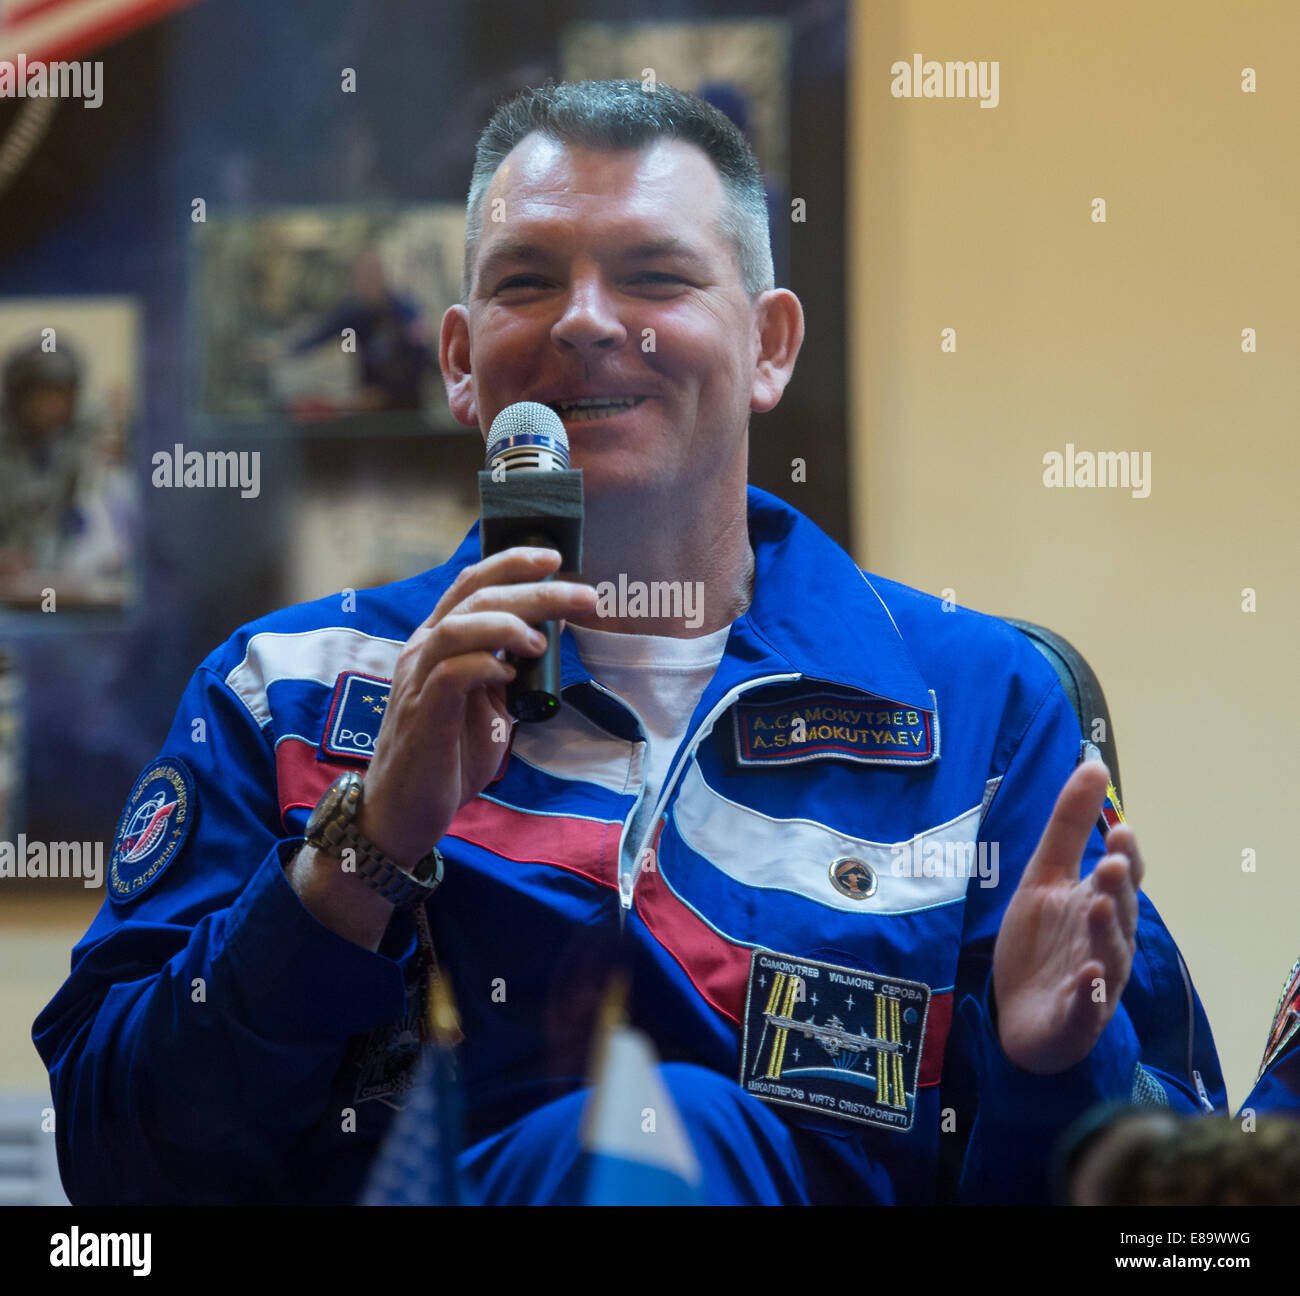 Expedition 41 commandant de Soyouz Alexander Samokutyaev de l'Agence spatiale fédérale russe (Roskosmos), répond à une question au cours d'une conférence de presse le mercredi, 24 septembre 2014, à l'hôtel cosmonaute à Baïkonour, au Kazakhstan. Lancement de la fusée Soyouz est s Banque D'Images